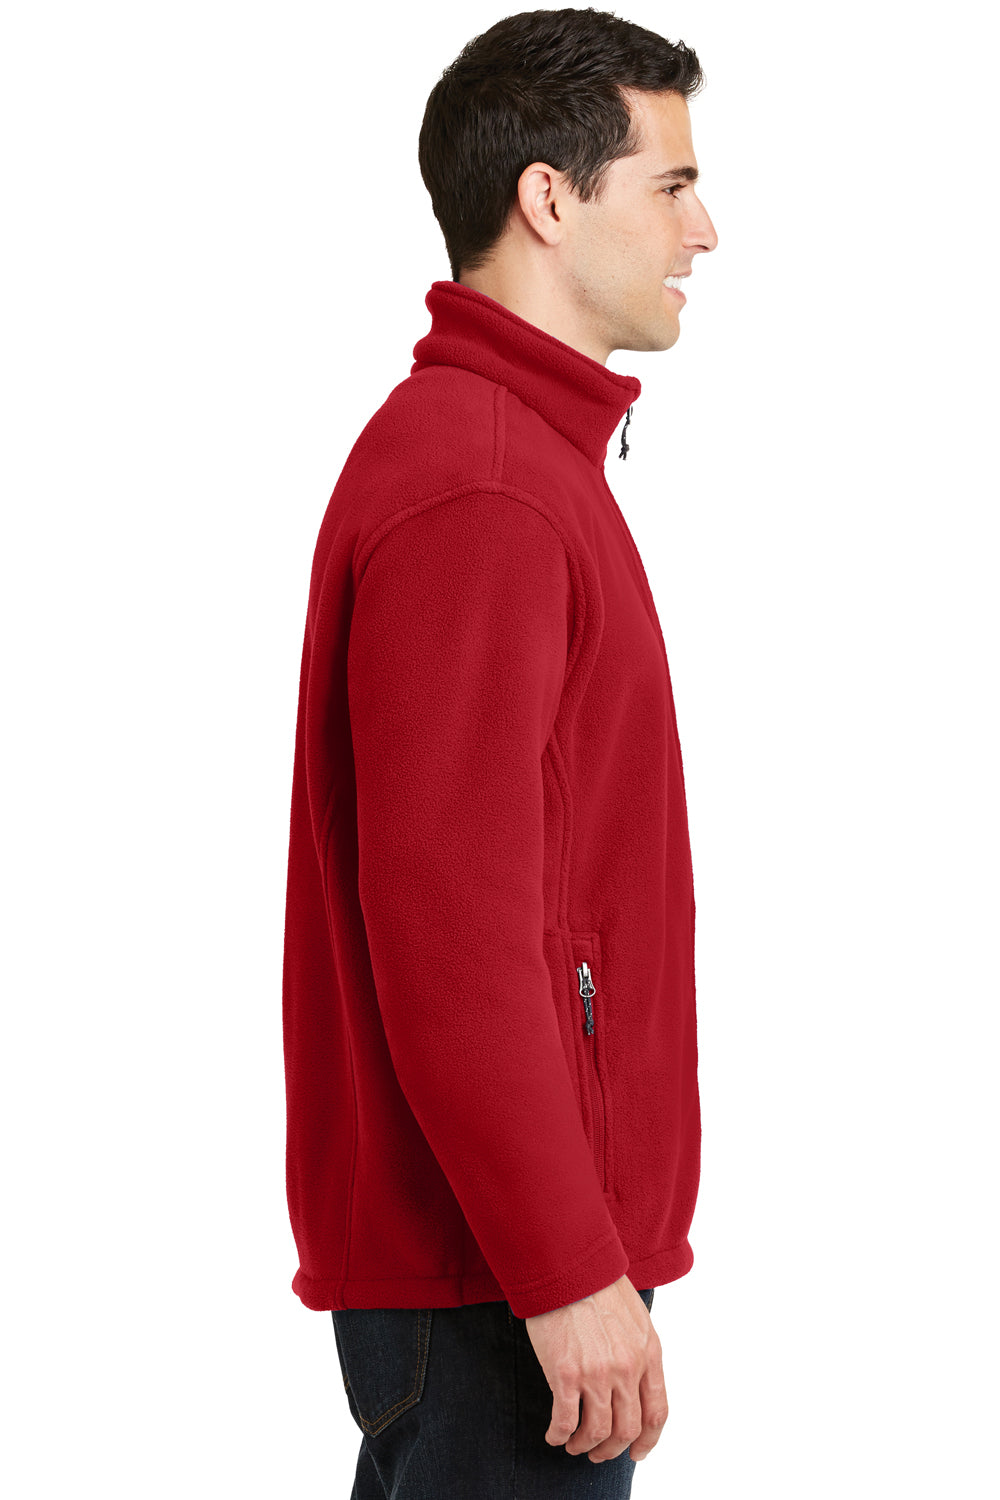 Port Authority F217 Mens Full Zip Fleece Jacket Red Side